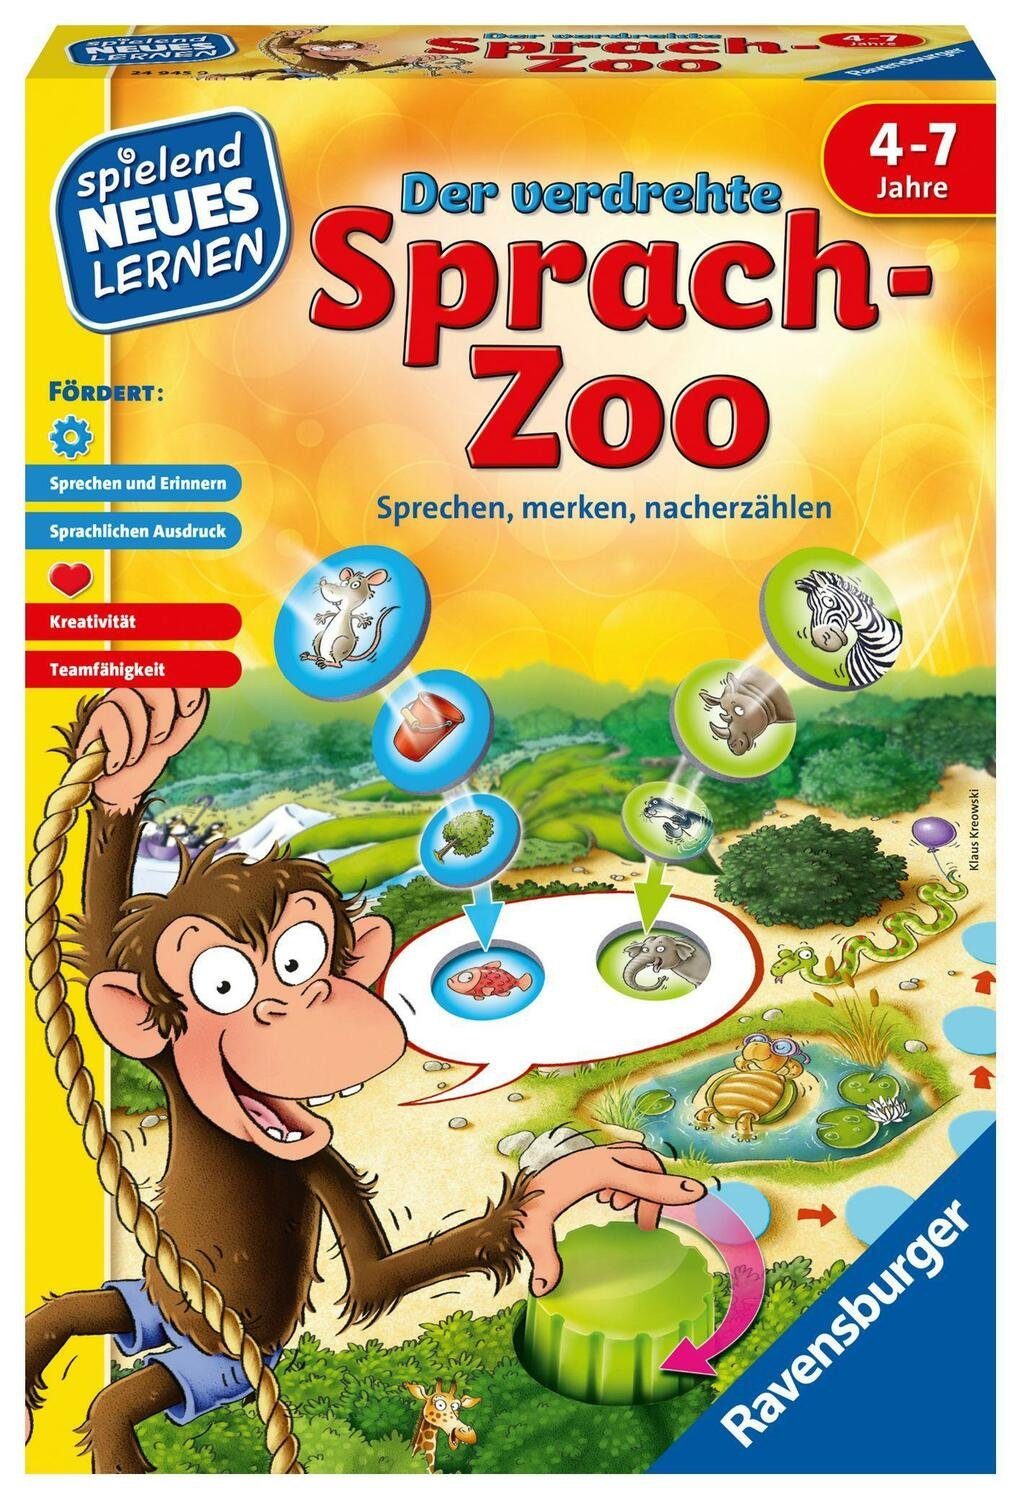 Sprach-Zoo Spiel, verdrehte Der Ravensburger